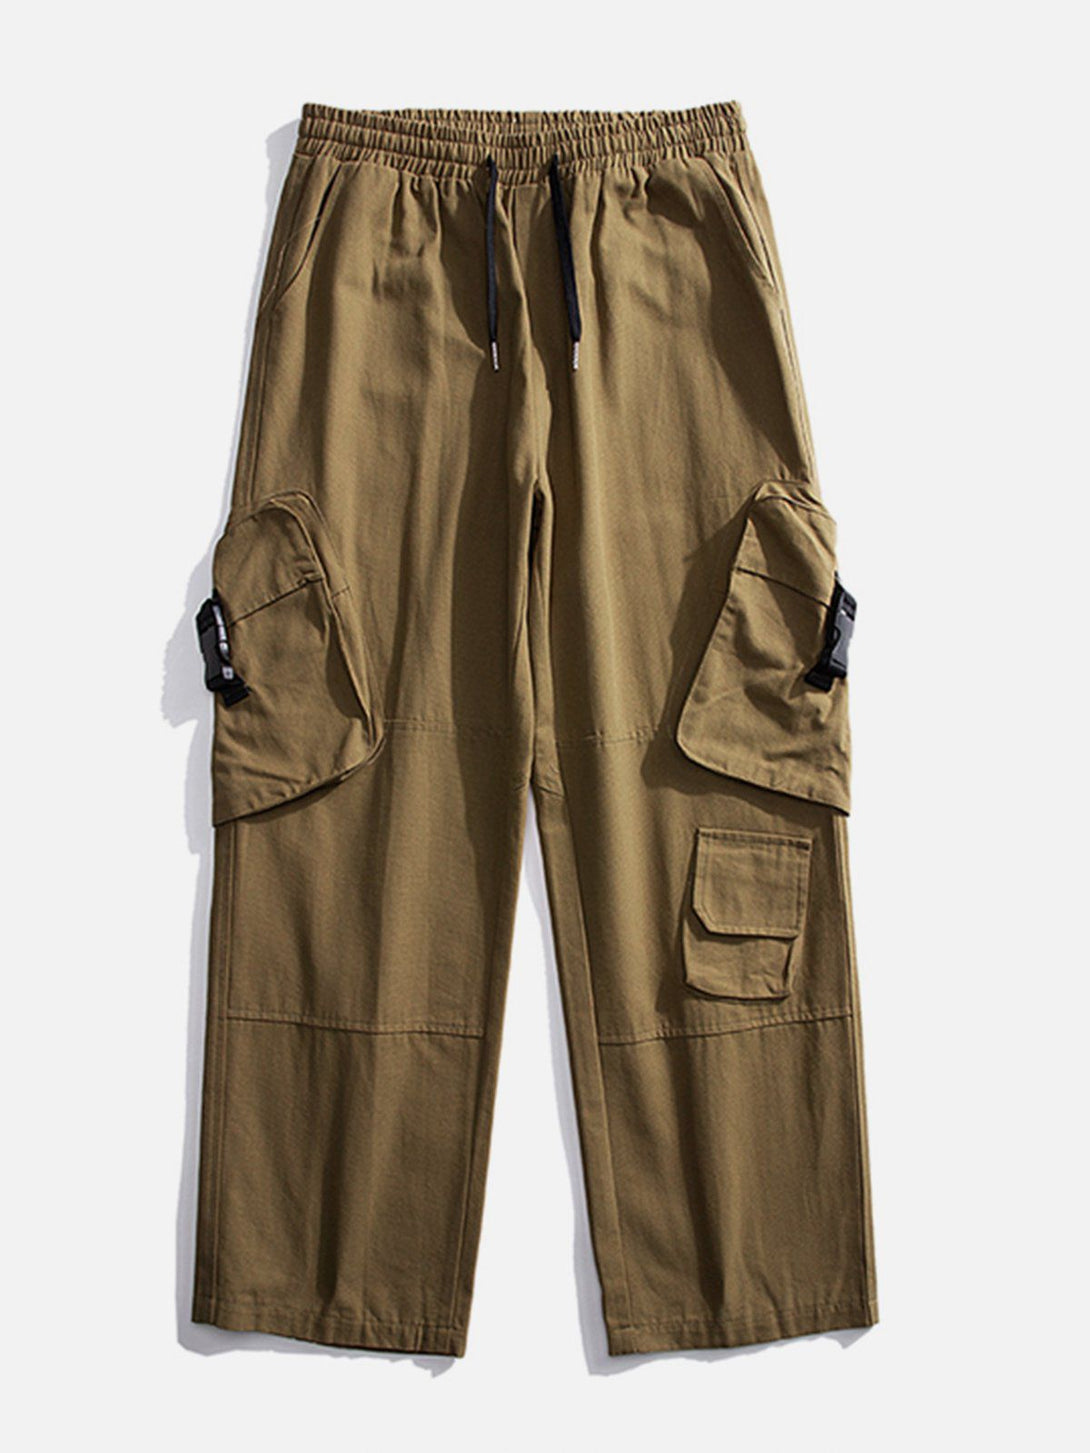 Levefly - Tilt Bag Buckle Pocket Cargo Pants - Streetwear Fashion - levefly.com